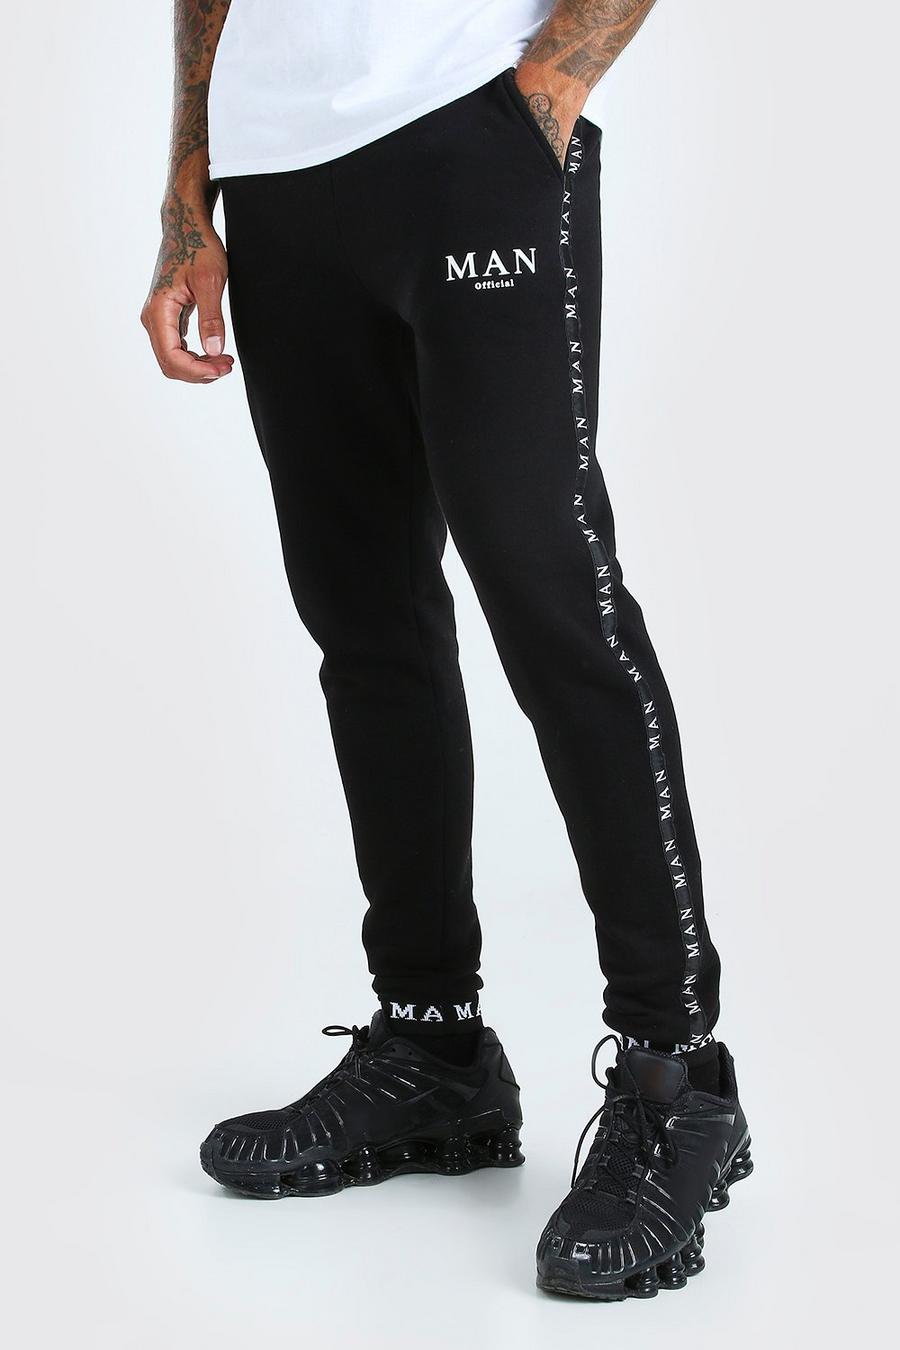 Pantaloni tuta con banda in vita, nastro e scritta MAN ricamata image number 1